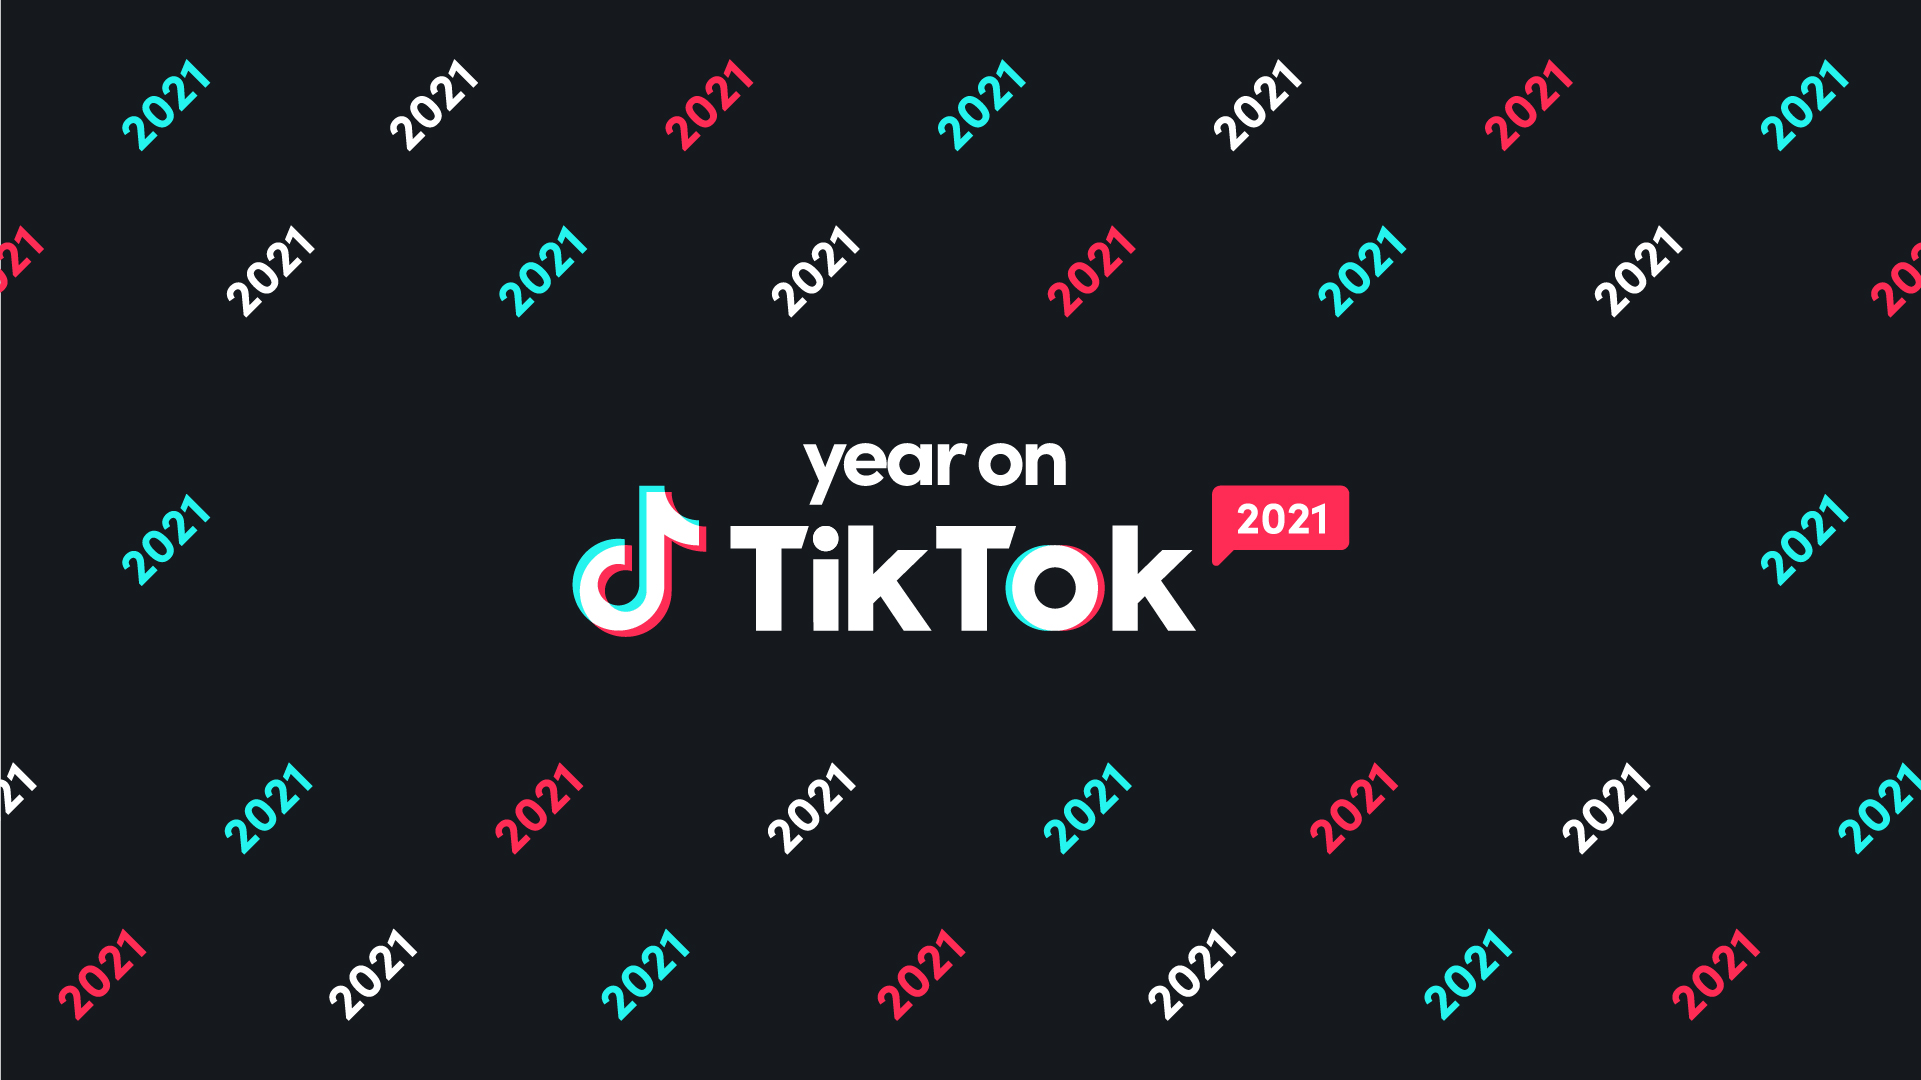 Year on TikTok chính là thước phim dày đặc những khoảnh khắc đáng nhớ và nổi bật nhất trên TikTok trong suốt năm vừa qua. Hãy xem và cảm nhận những hình ảnh đơn giản nhưng ẩn chứa nhiều tình cảm và chất lượng mang lại cho người xem một sự thăng hoa cảm xúc.